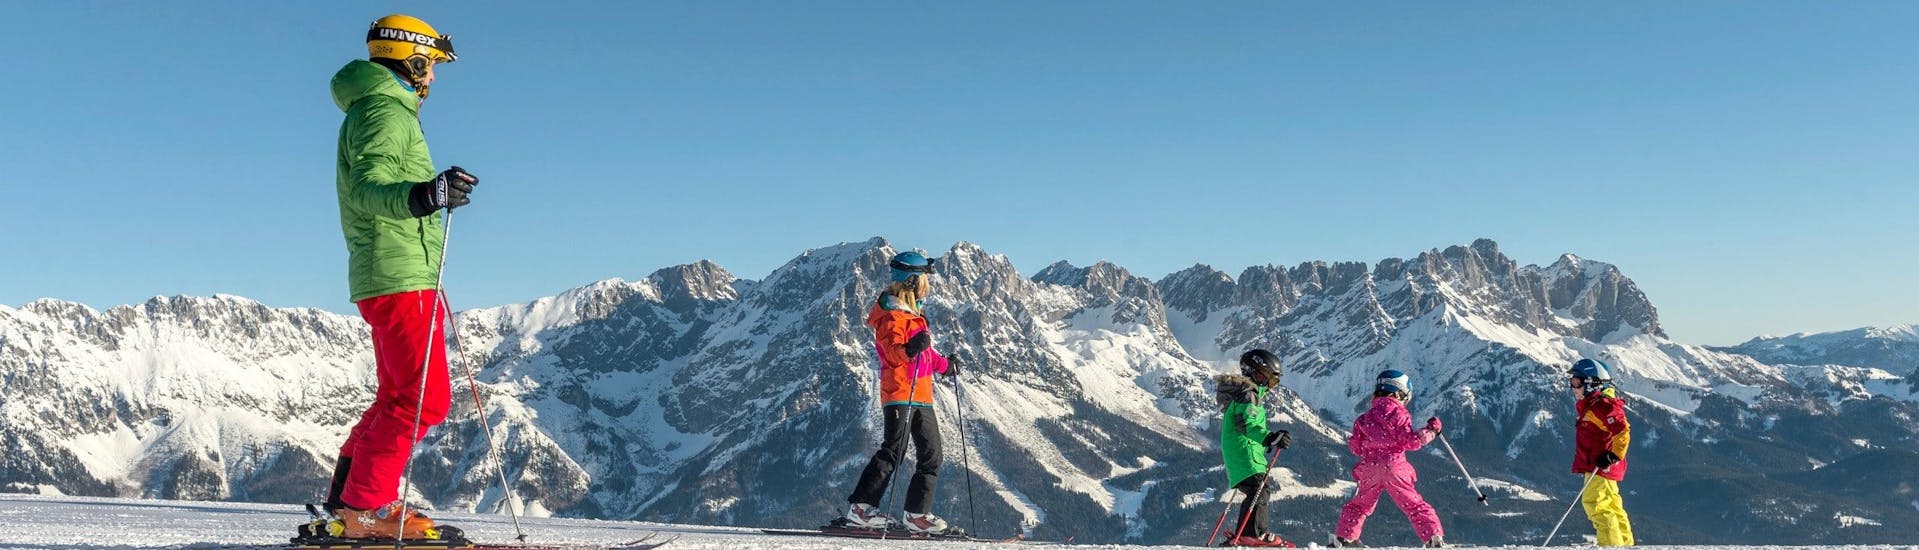 Ausblick auf die sonnige Berglandschaft beim Skifahren lernen mit den Skischulen im Skigebiet SkiWelt Wilder Kaiser-Brixental.